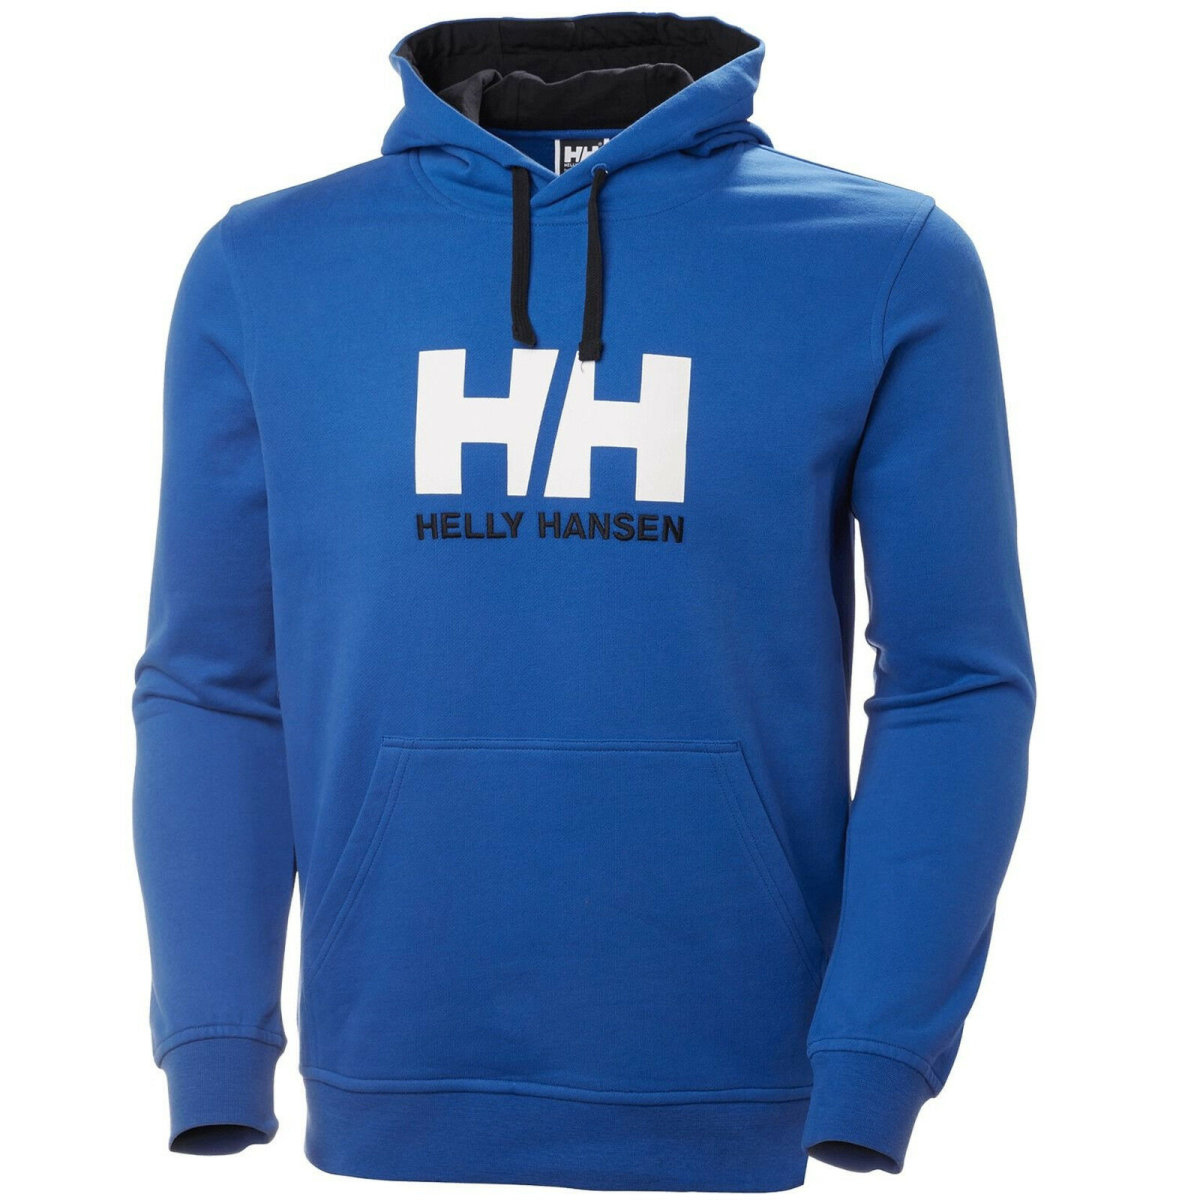 HH Helly Hansen Logo Hoodie  33977 blau Herren Pullover Kapuzenpullover Sweater